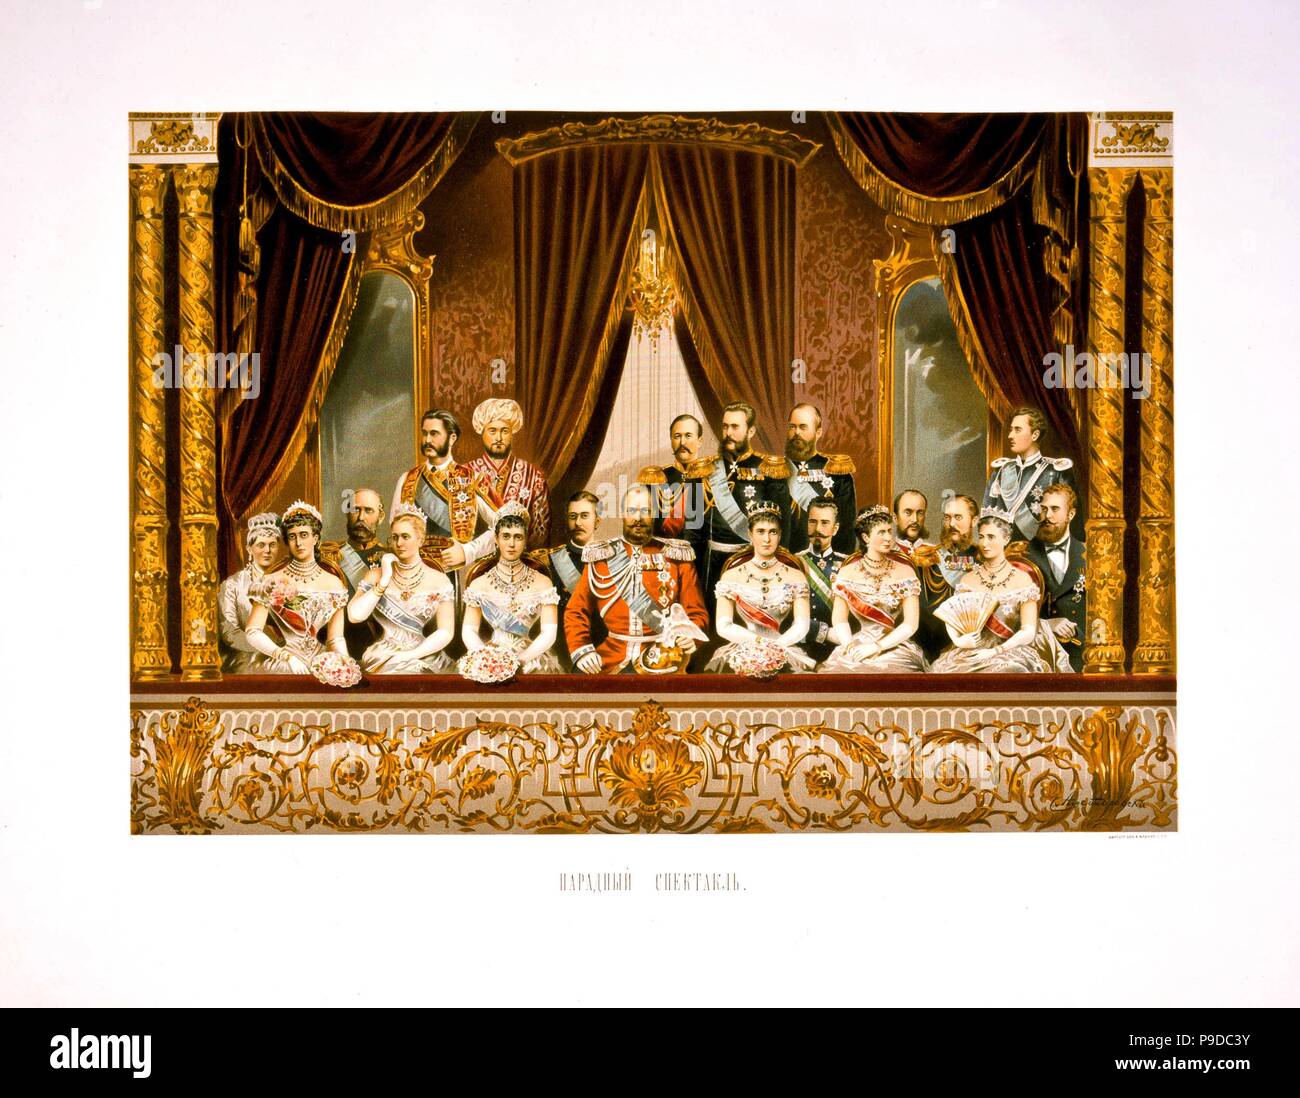 Il ritratto di gruppo presso il Teatro Bolshoi. Incoronazione di Empreror Alexander III e l'Imperatrice Maria Fyodorovna. Museo: Collezione privata. Foto Stock